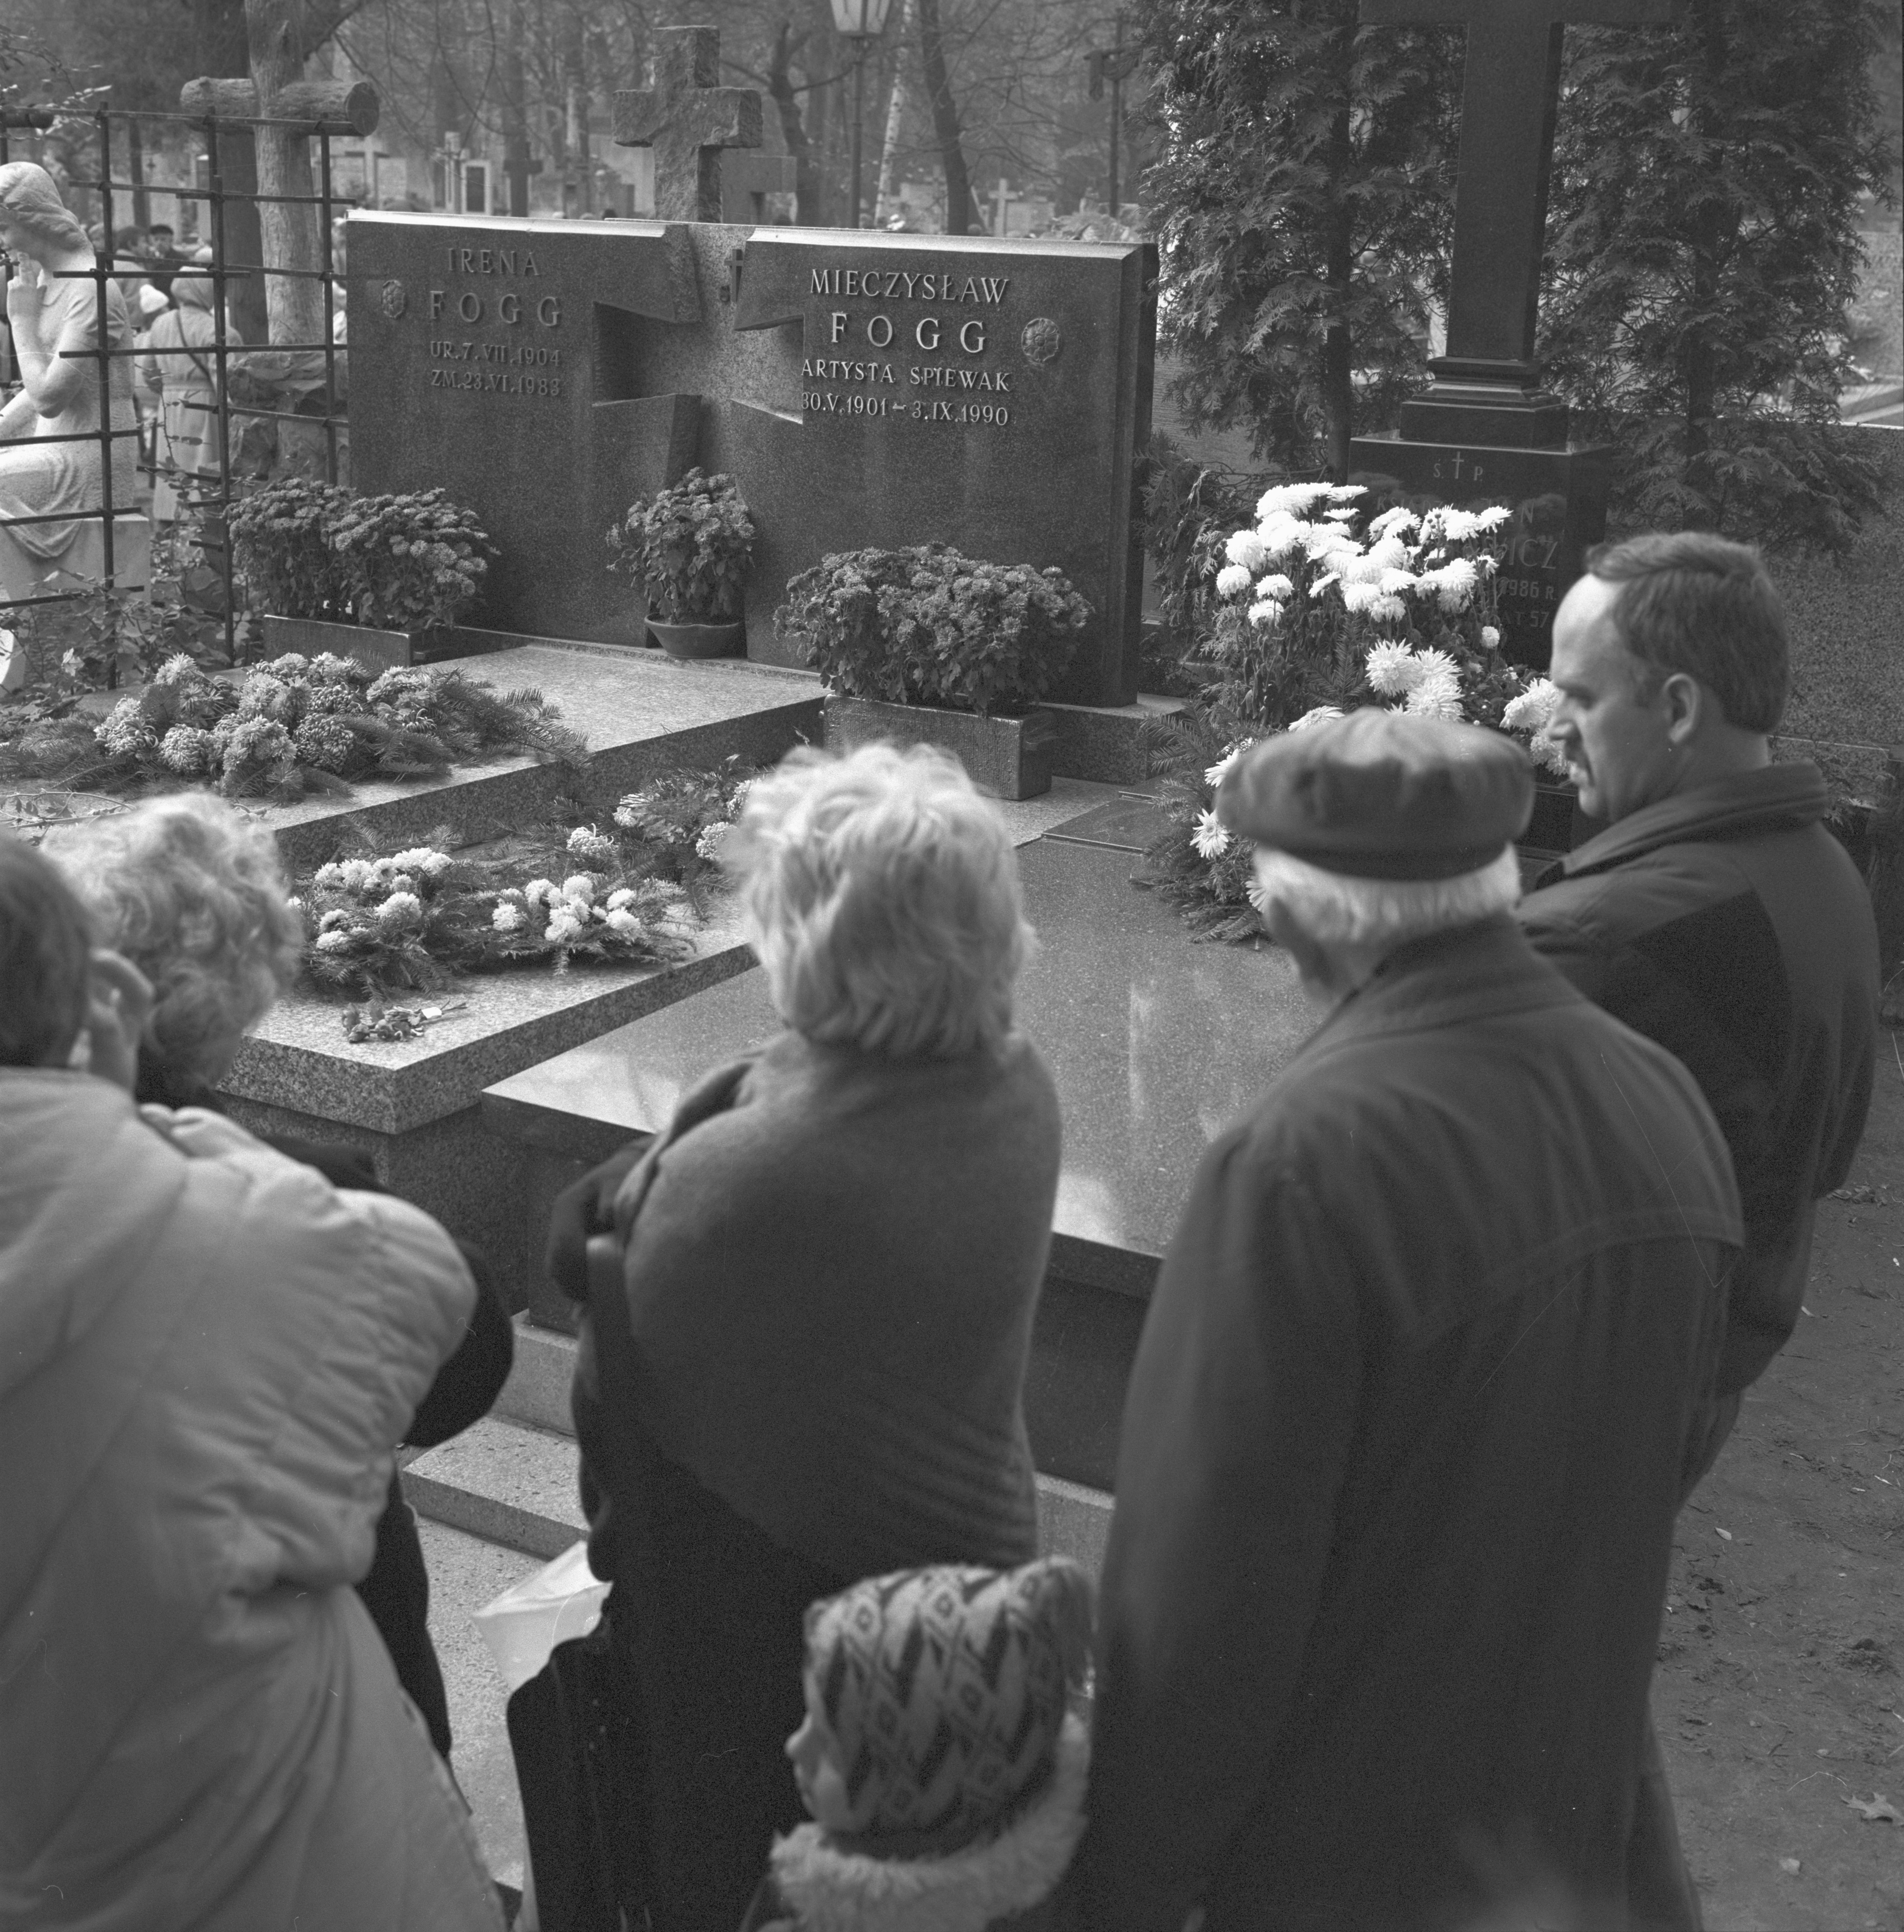 Dzień Wszystkich Świętych w 1990 roku. Grób Mieczysława Fogga na Cmentarzu Bródnowskim  Foto: PAP/Adam Urbanek